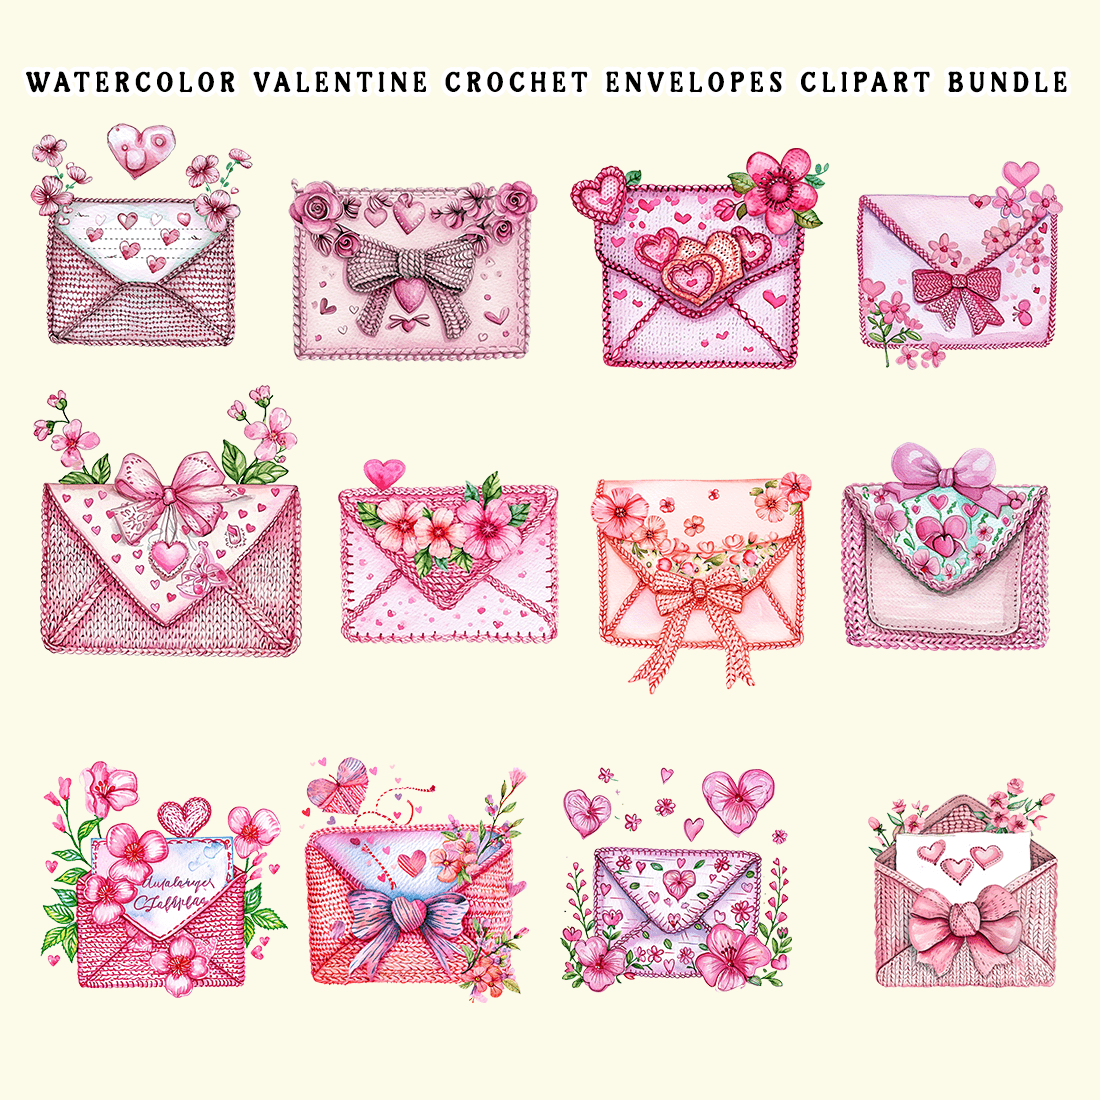 Watercolor Valentine Crochet Envelopes Clipart Bundle preview image.